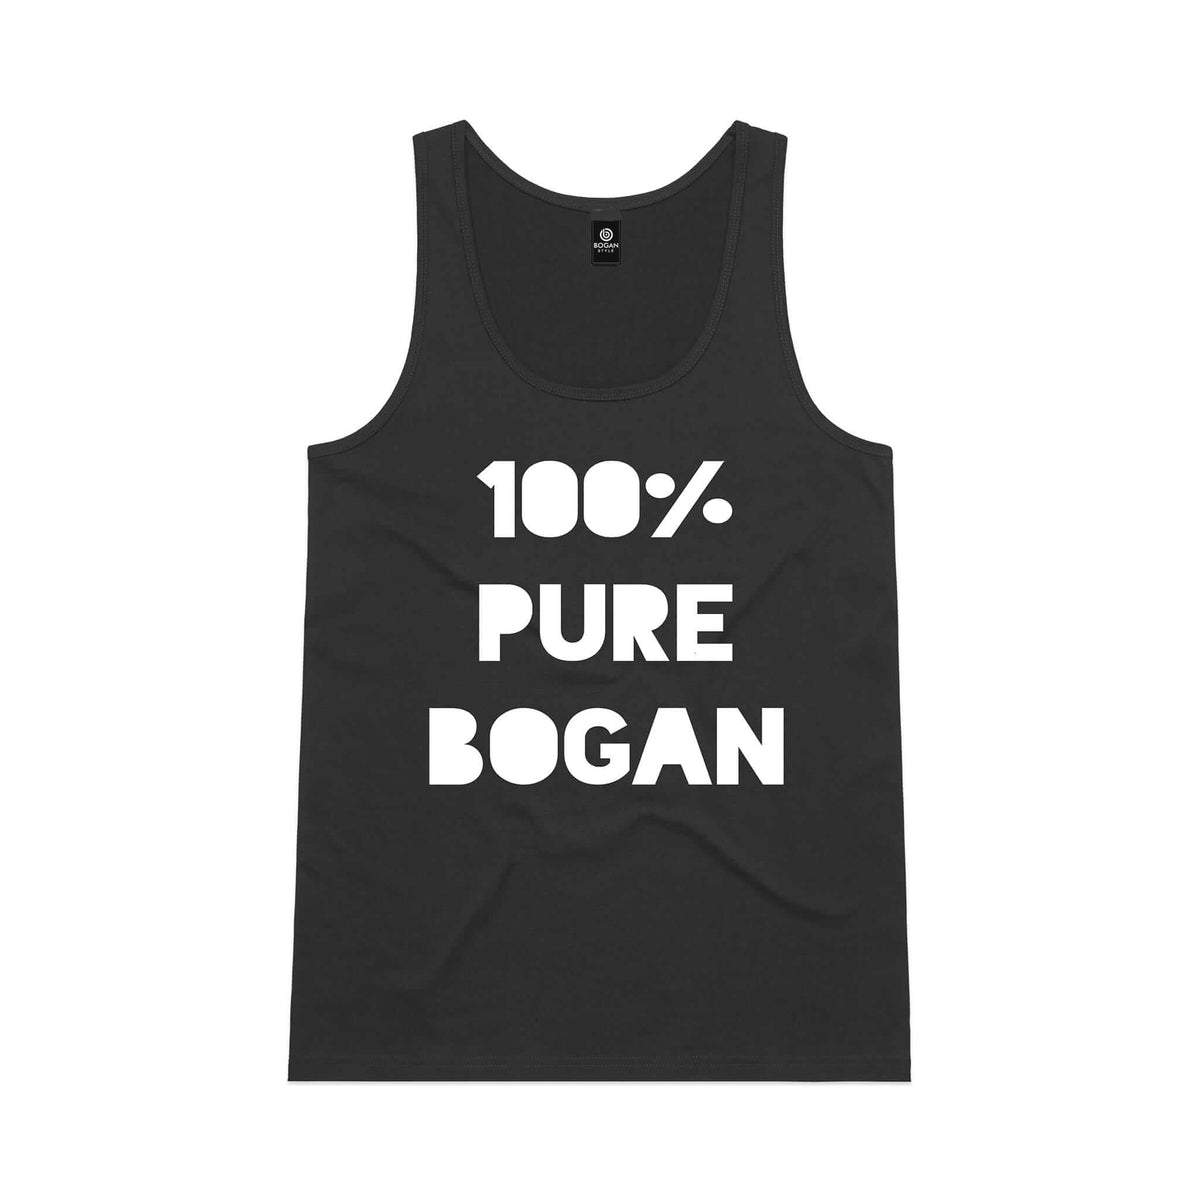 100% Pure Bogan Black Tank Top